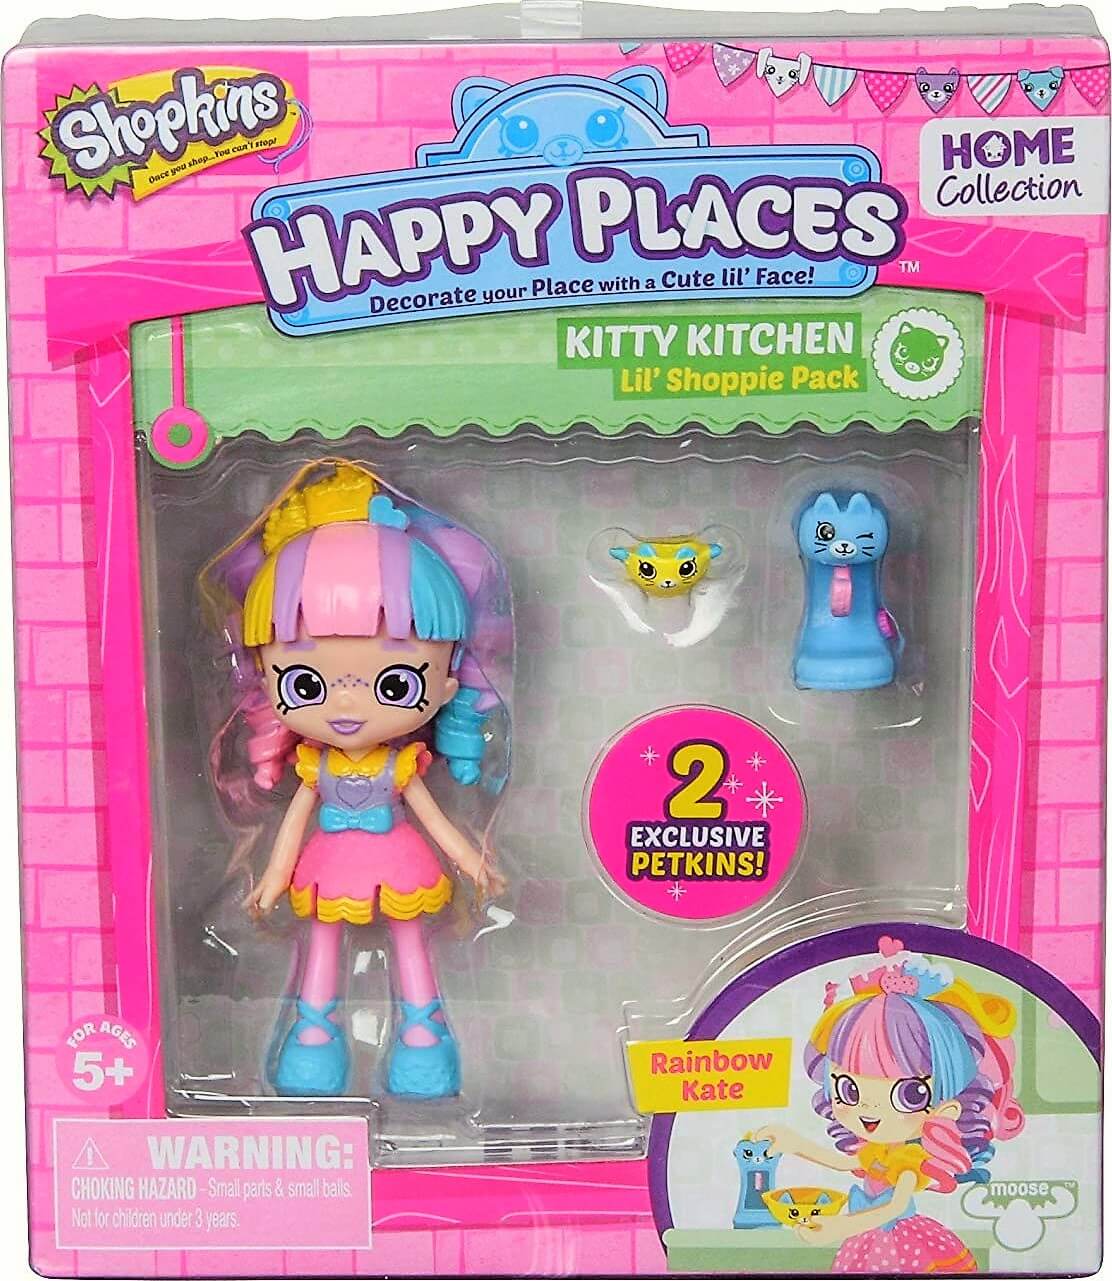 Lil Shoppie Pack Kitty Kitchen Rainbow Kate ( Giochi Preziosi 56319 ) imagen c